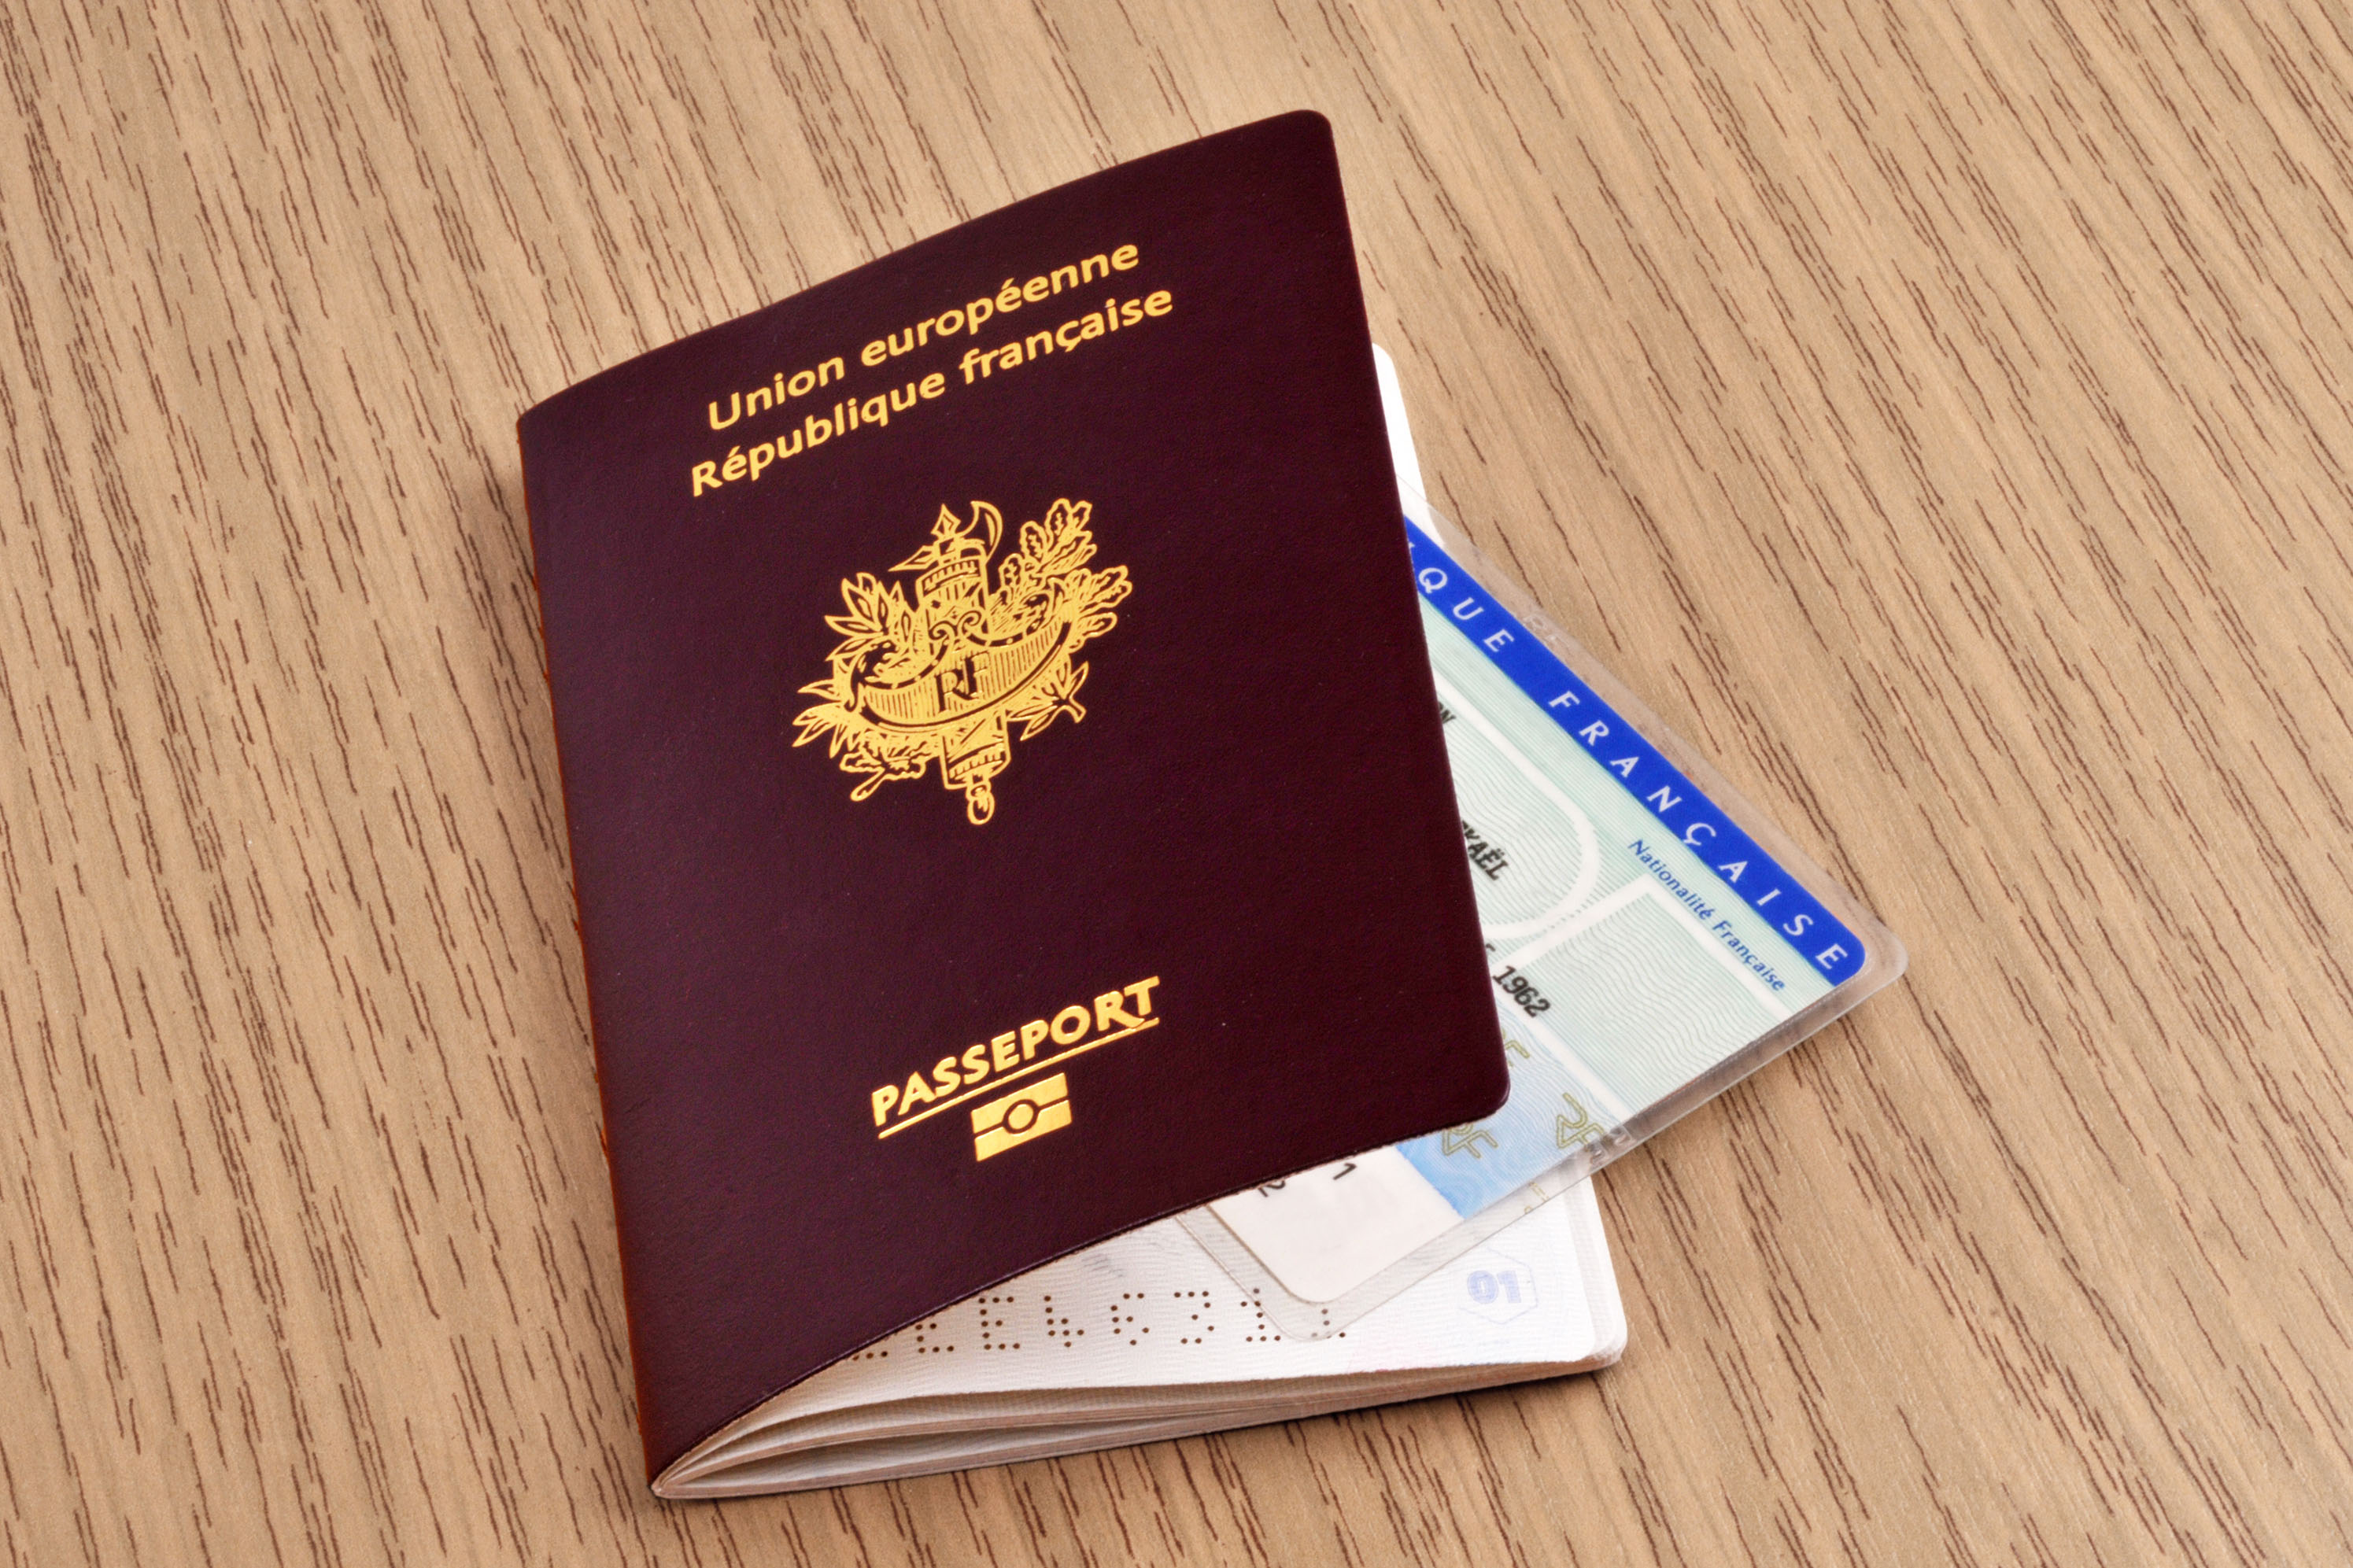 Vous voulez un rendez-vous pour votre passeport ou carte d'identité ? Le gouvernement lance une nouvelle plateforme